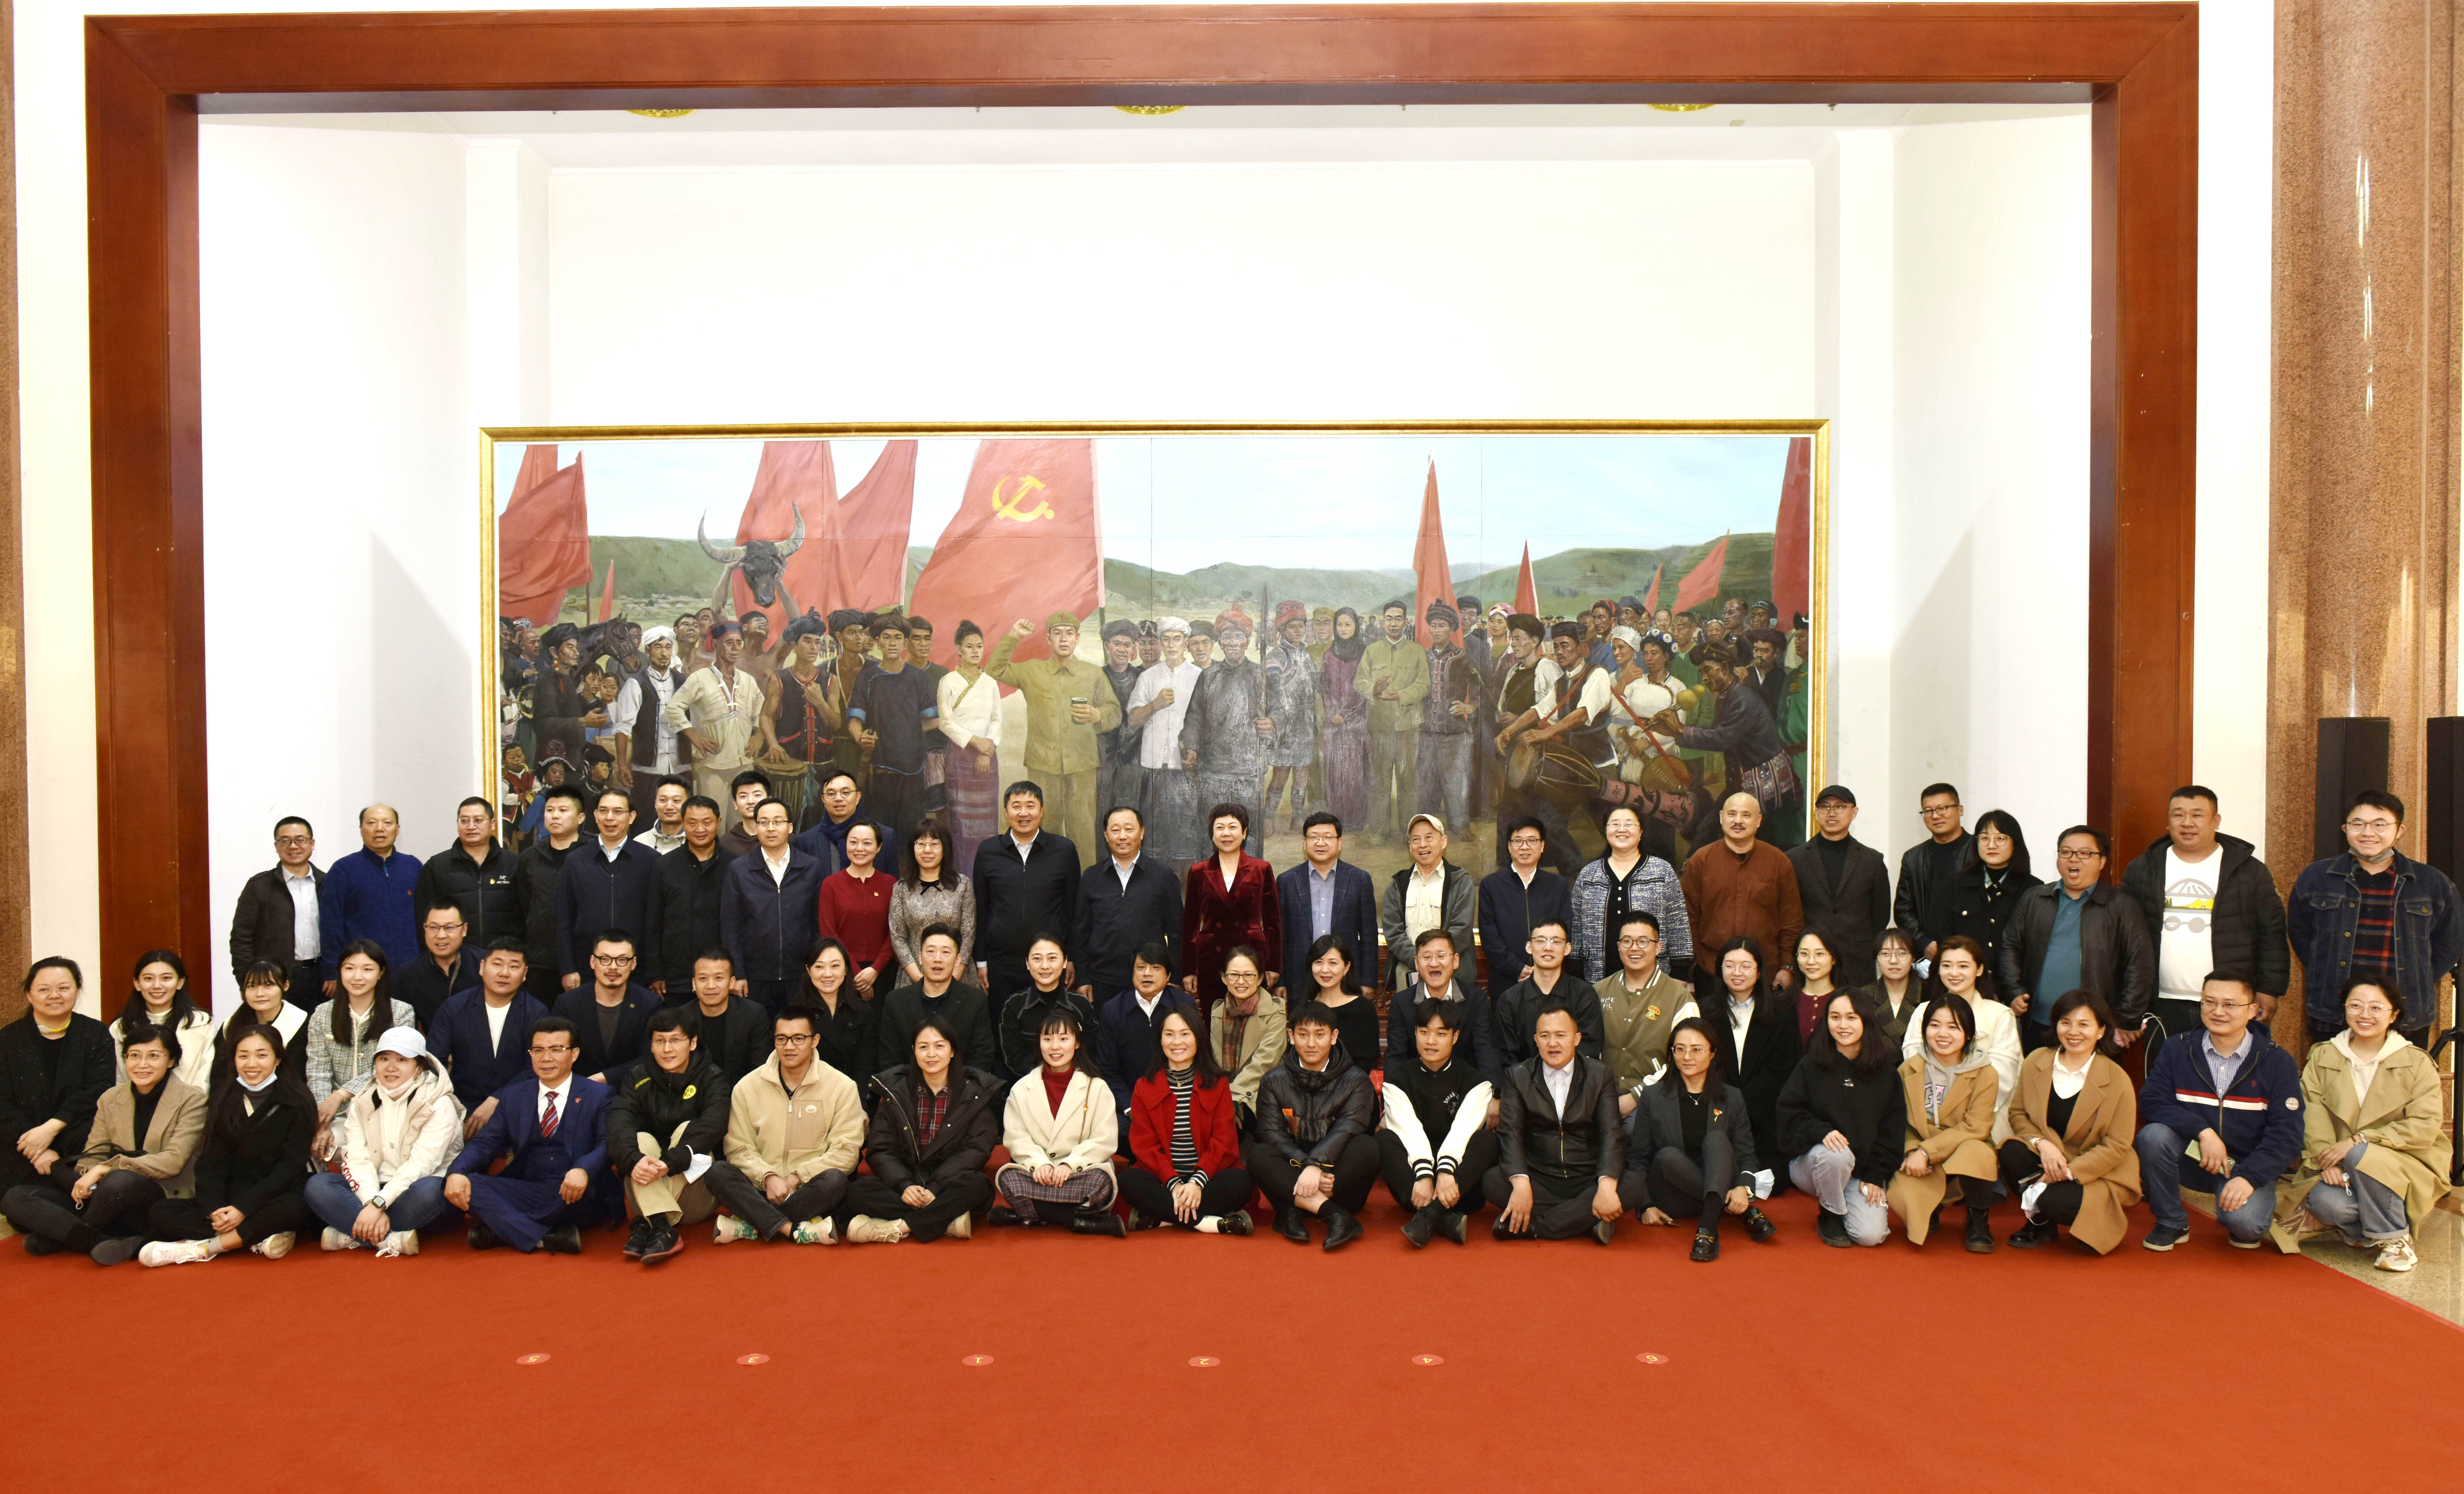 《永远跟党走——云南民族团结誓词碑》 大型主题油画捐赠仪式在北京举行